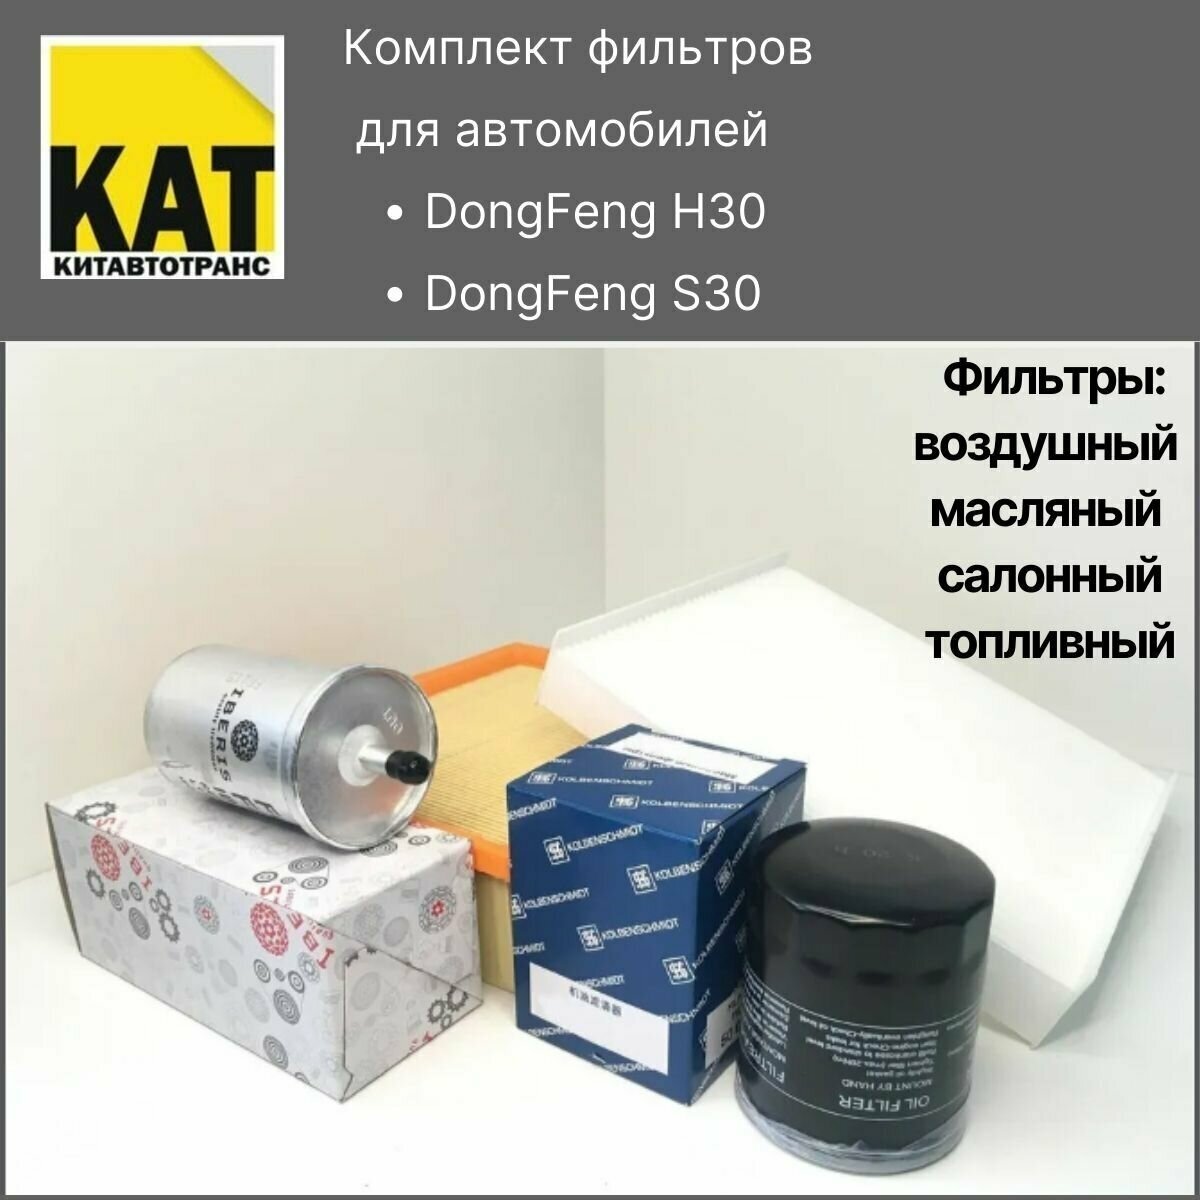 Фильтр воздушный + масляный + салонный + топливный Донгфенг H30 Кросс (DONGFENG H30 CROSS)